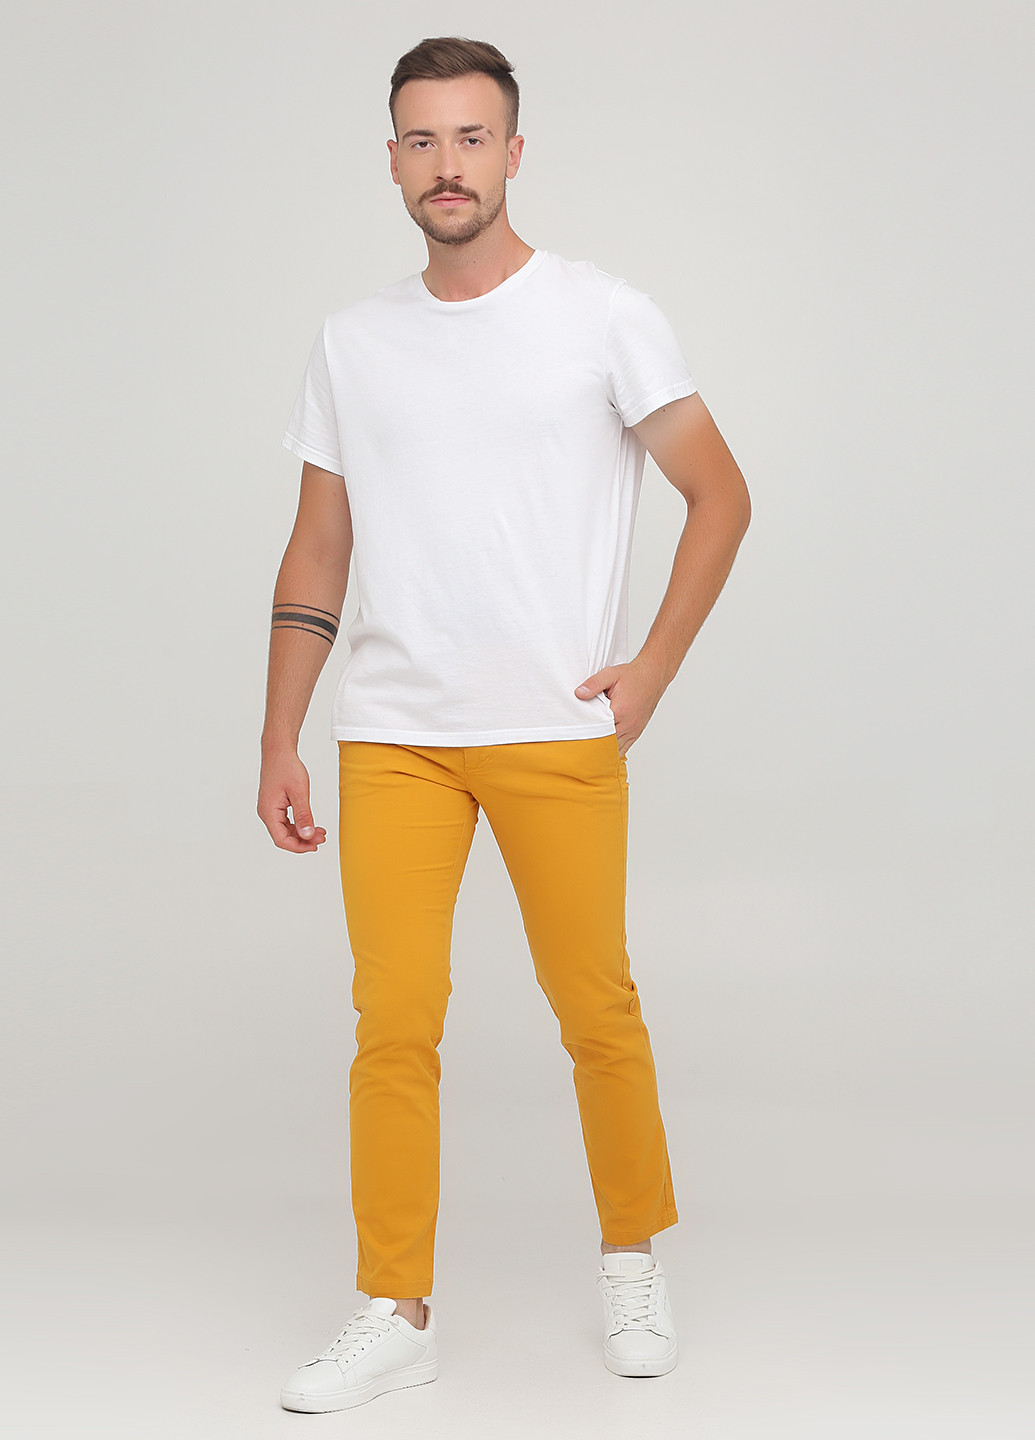 Желтые кэжуал демисезонные чиносы брюки United Colors of Benetton